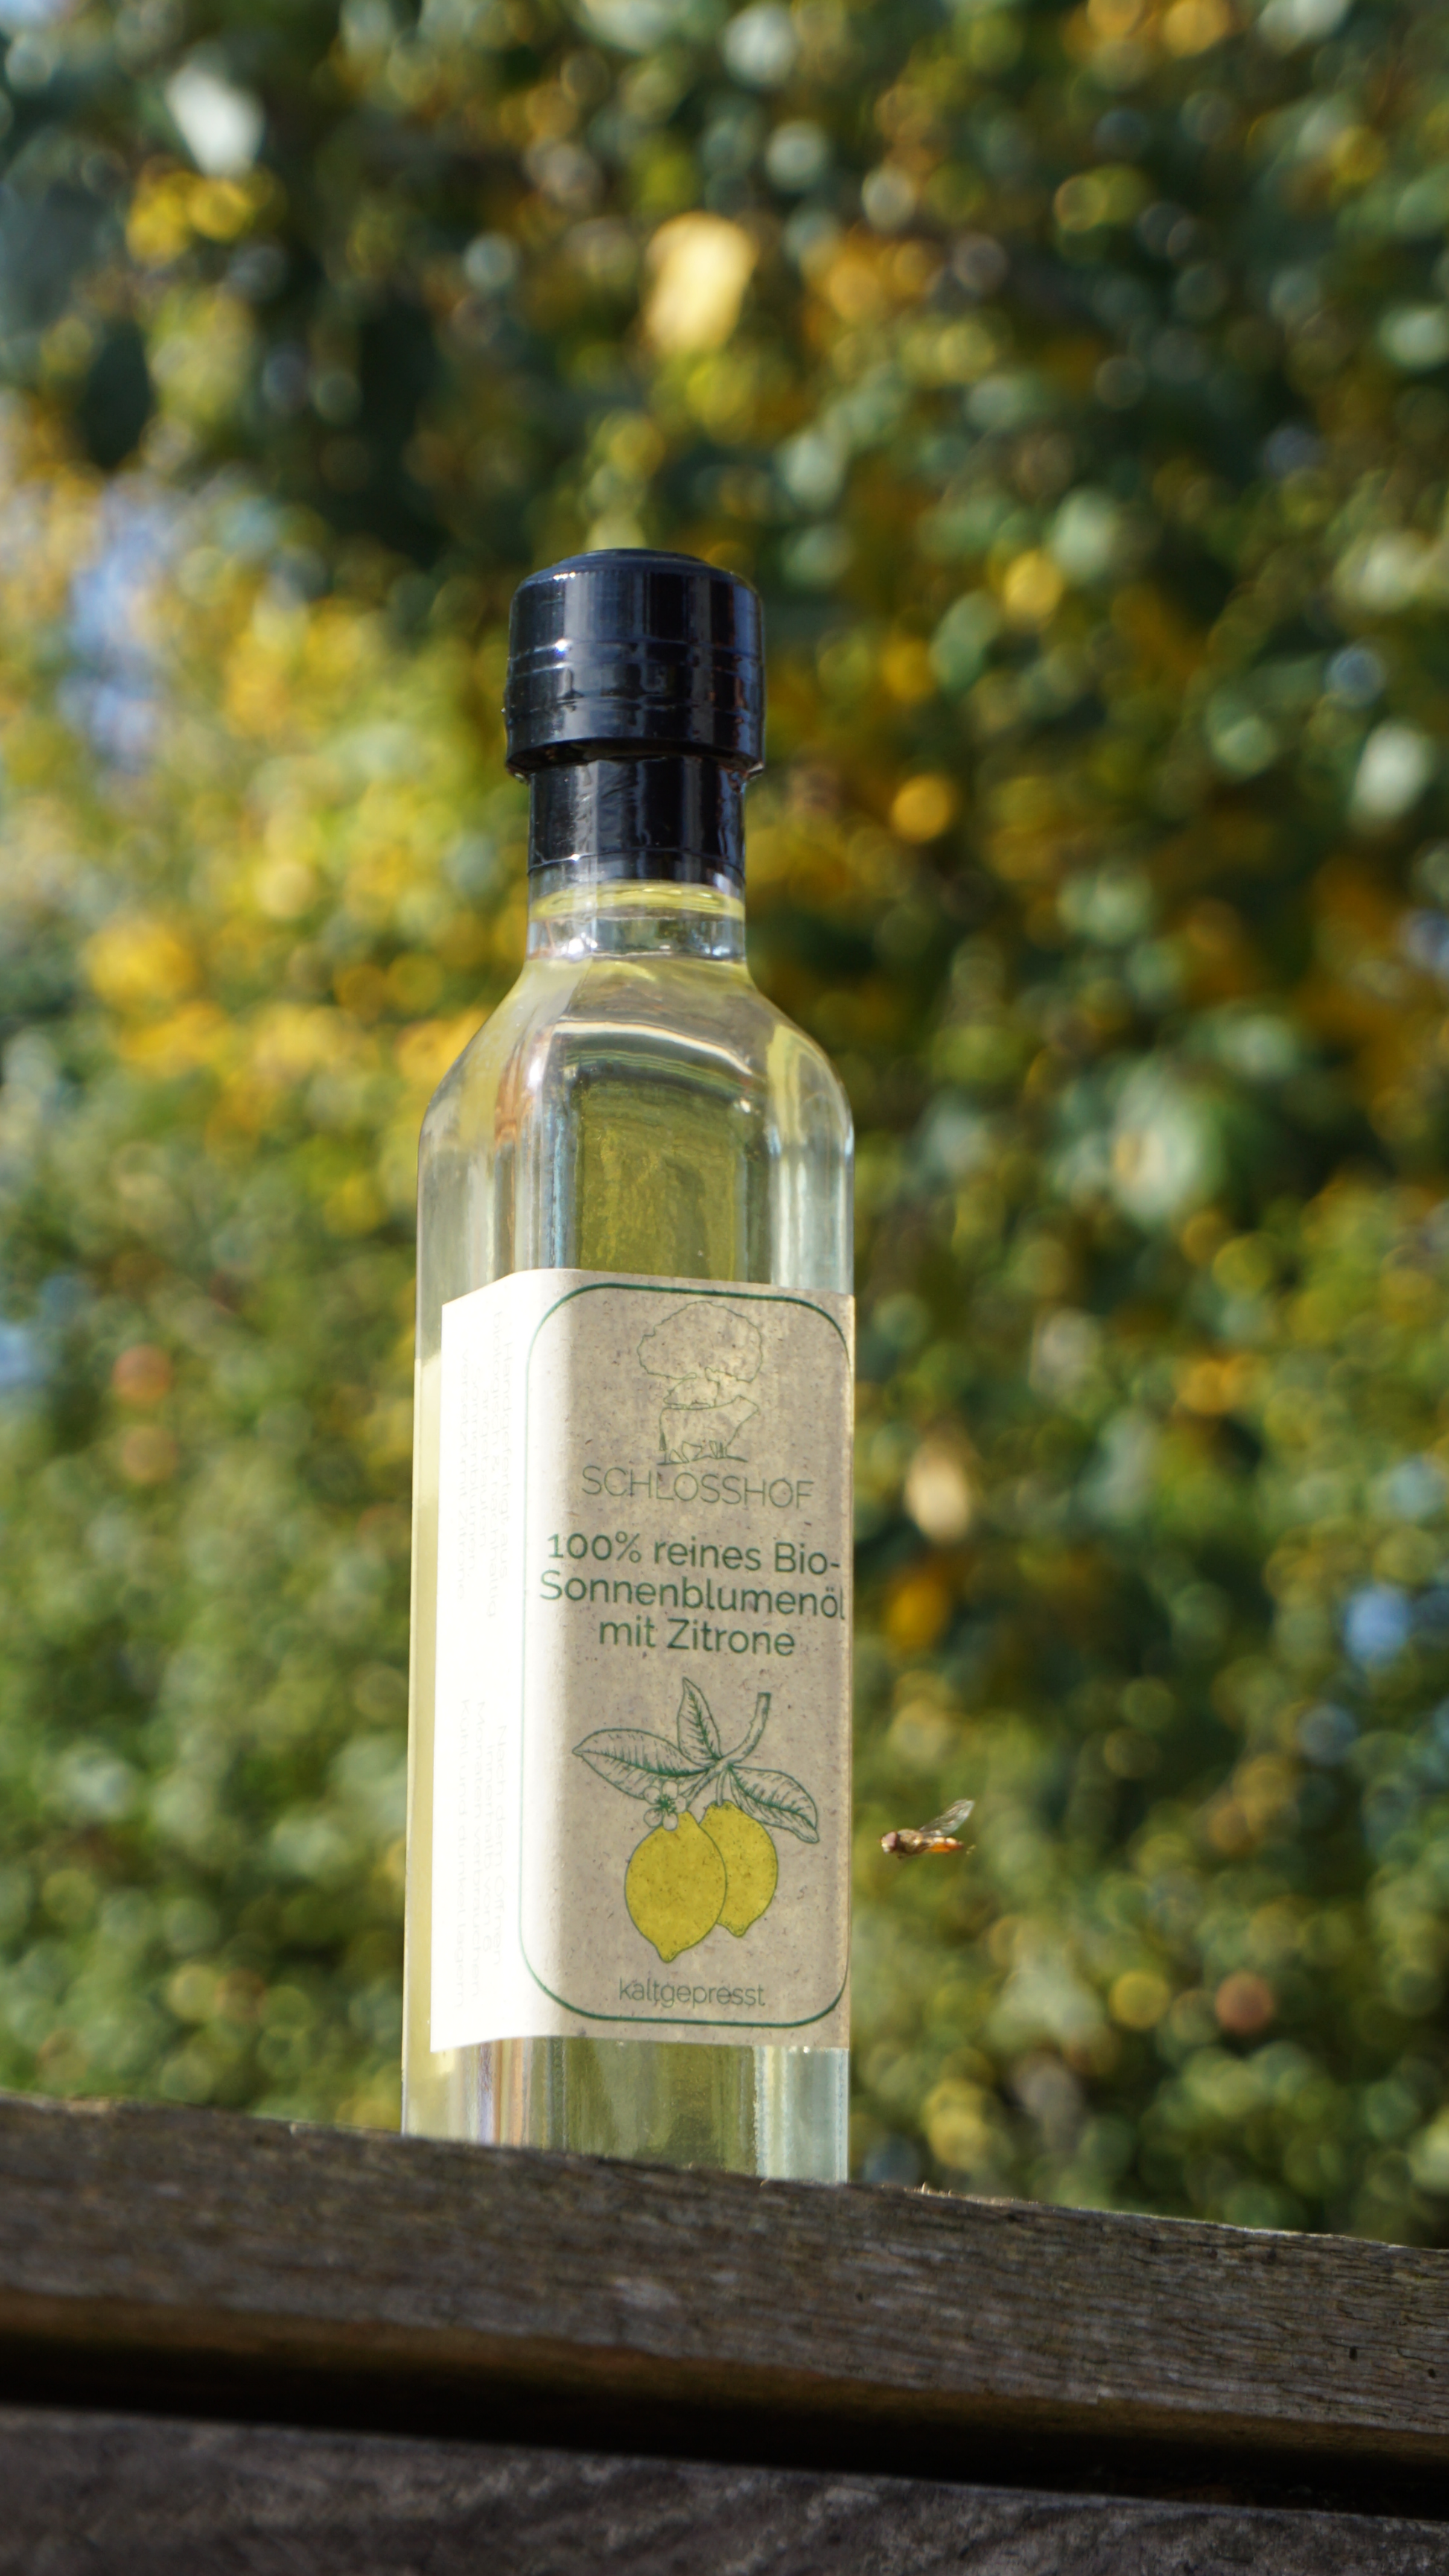 Reines Bio-Sonnenblumenöl verfeinert mit Zitrone. Handgefertigt, nachhaltig, vegan, biologisch angebaut. Direkt vom Bauernhof